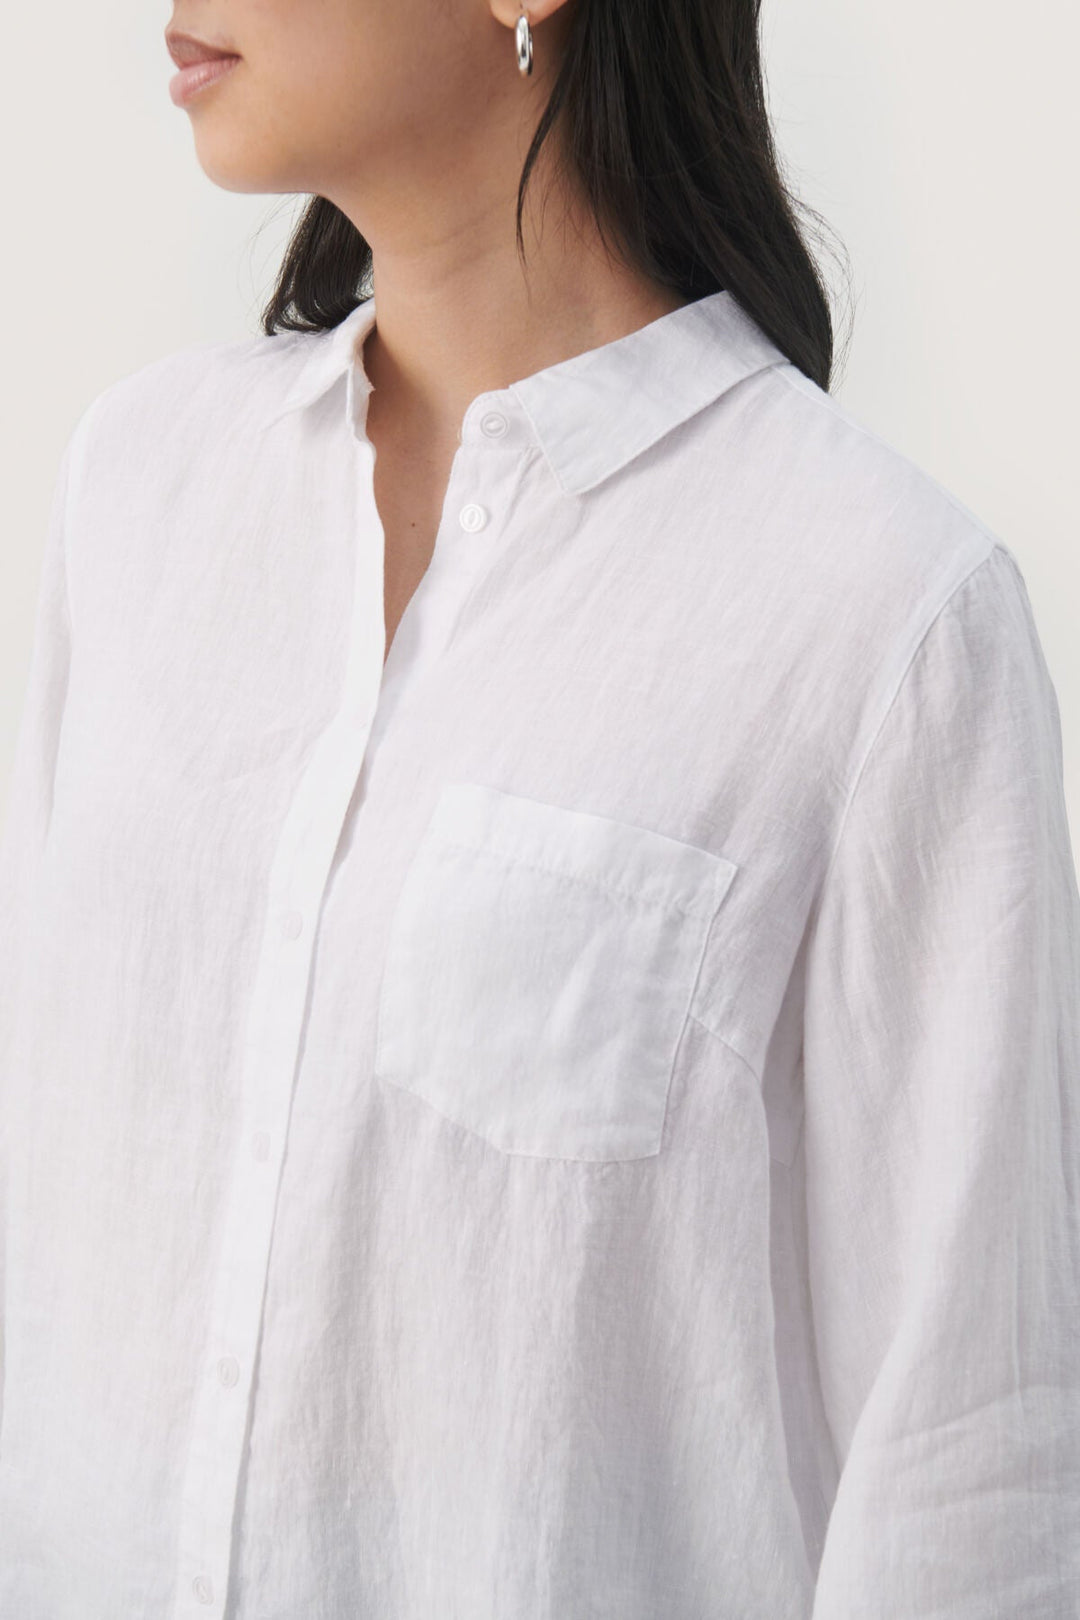 Cindiepw Shirt Bright White | Skjorter og bluser | Smuk - Dameklær på nett